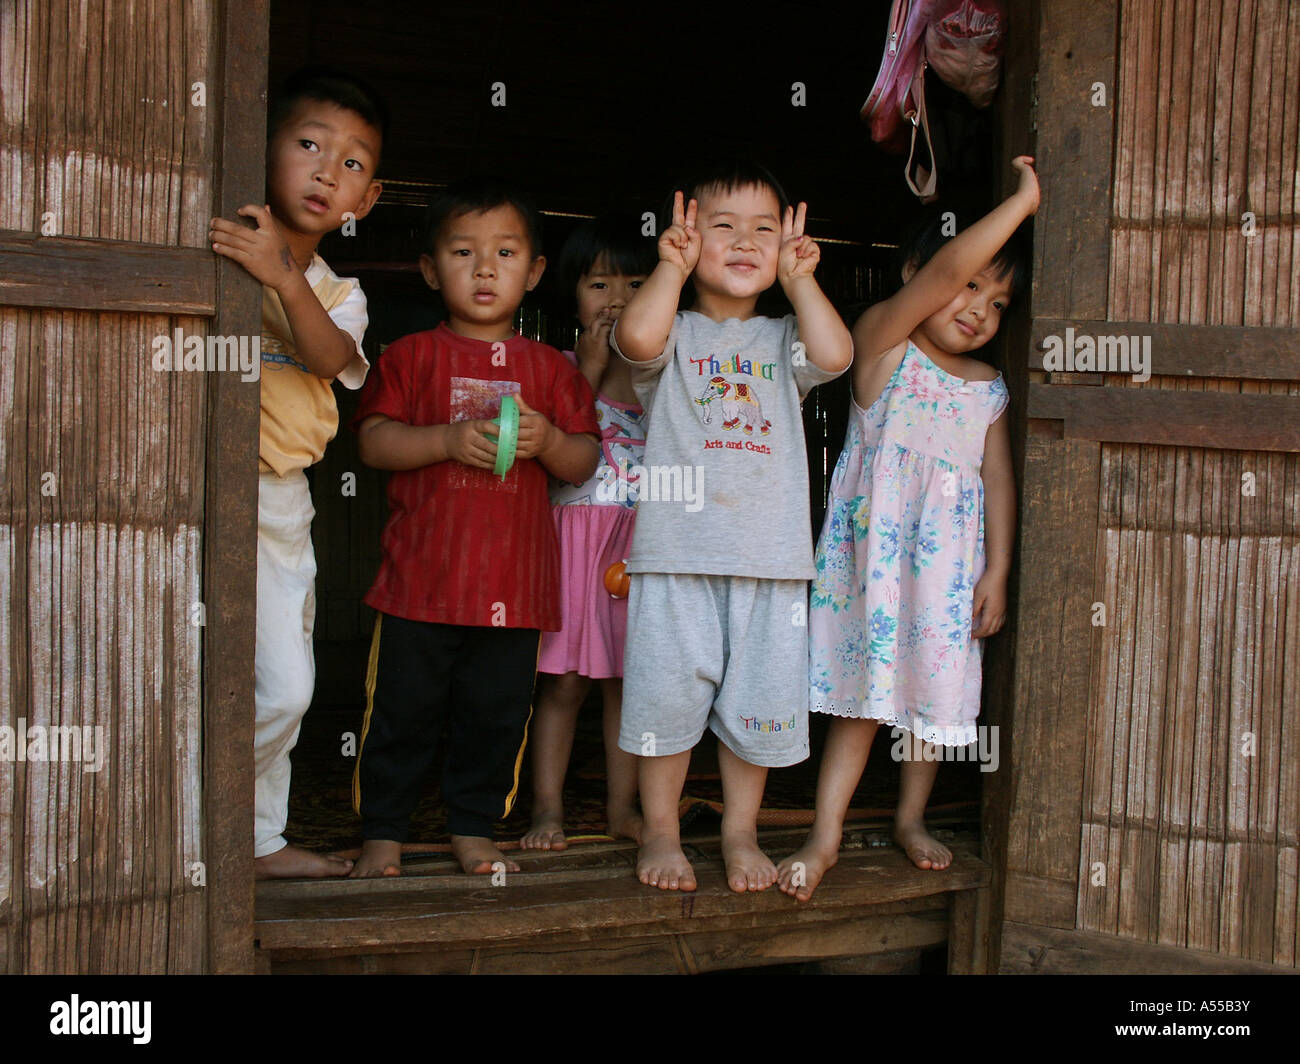 Painet2804 ip 9604 niños Tailandia kachin en ban mai samaki país menos desarrollado económicamente desarrollando la nación cultura Foto de stock